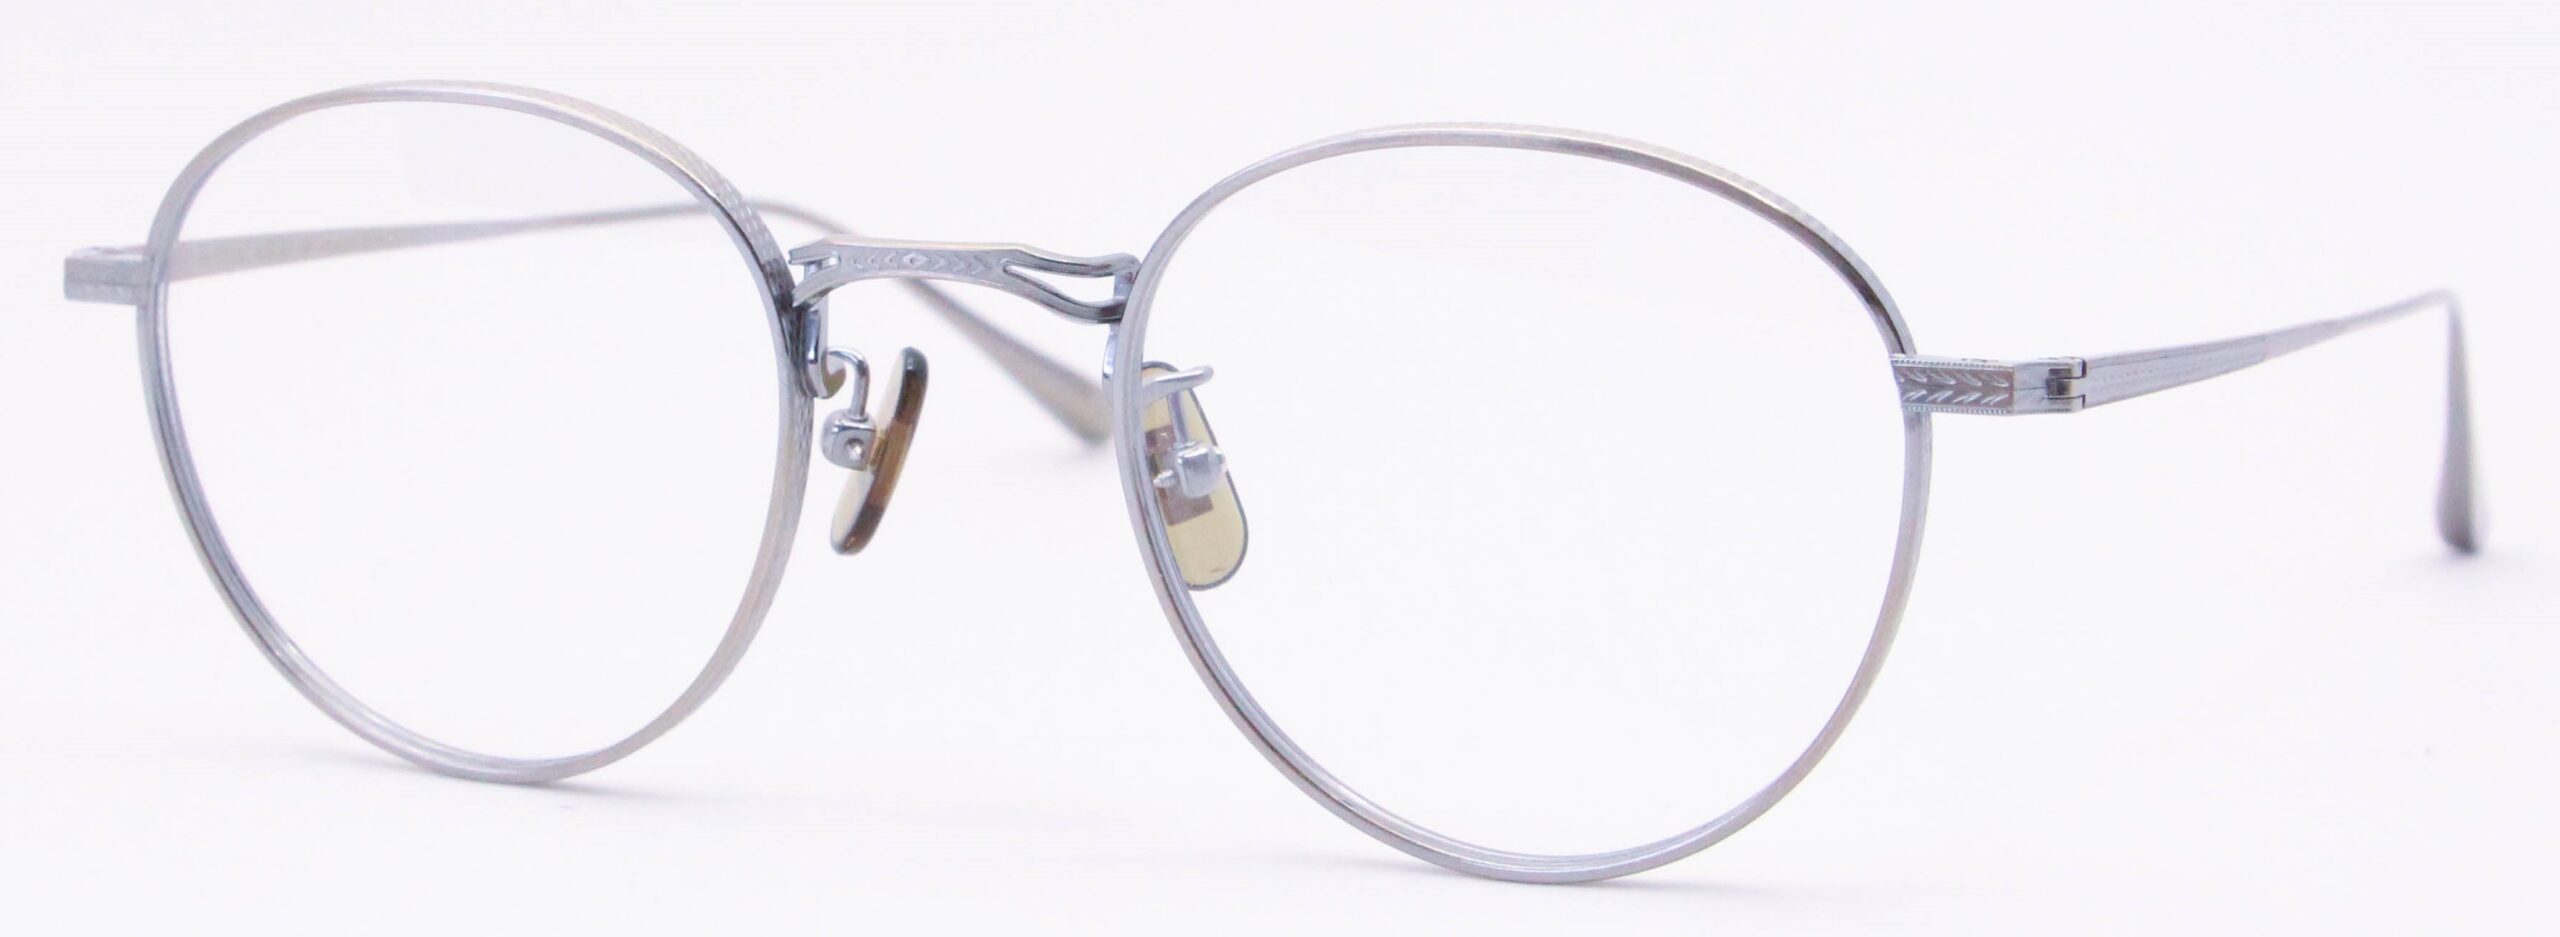 眼鏡のカラータイプC-4 At-Gold